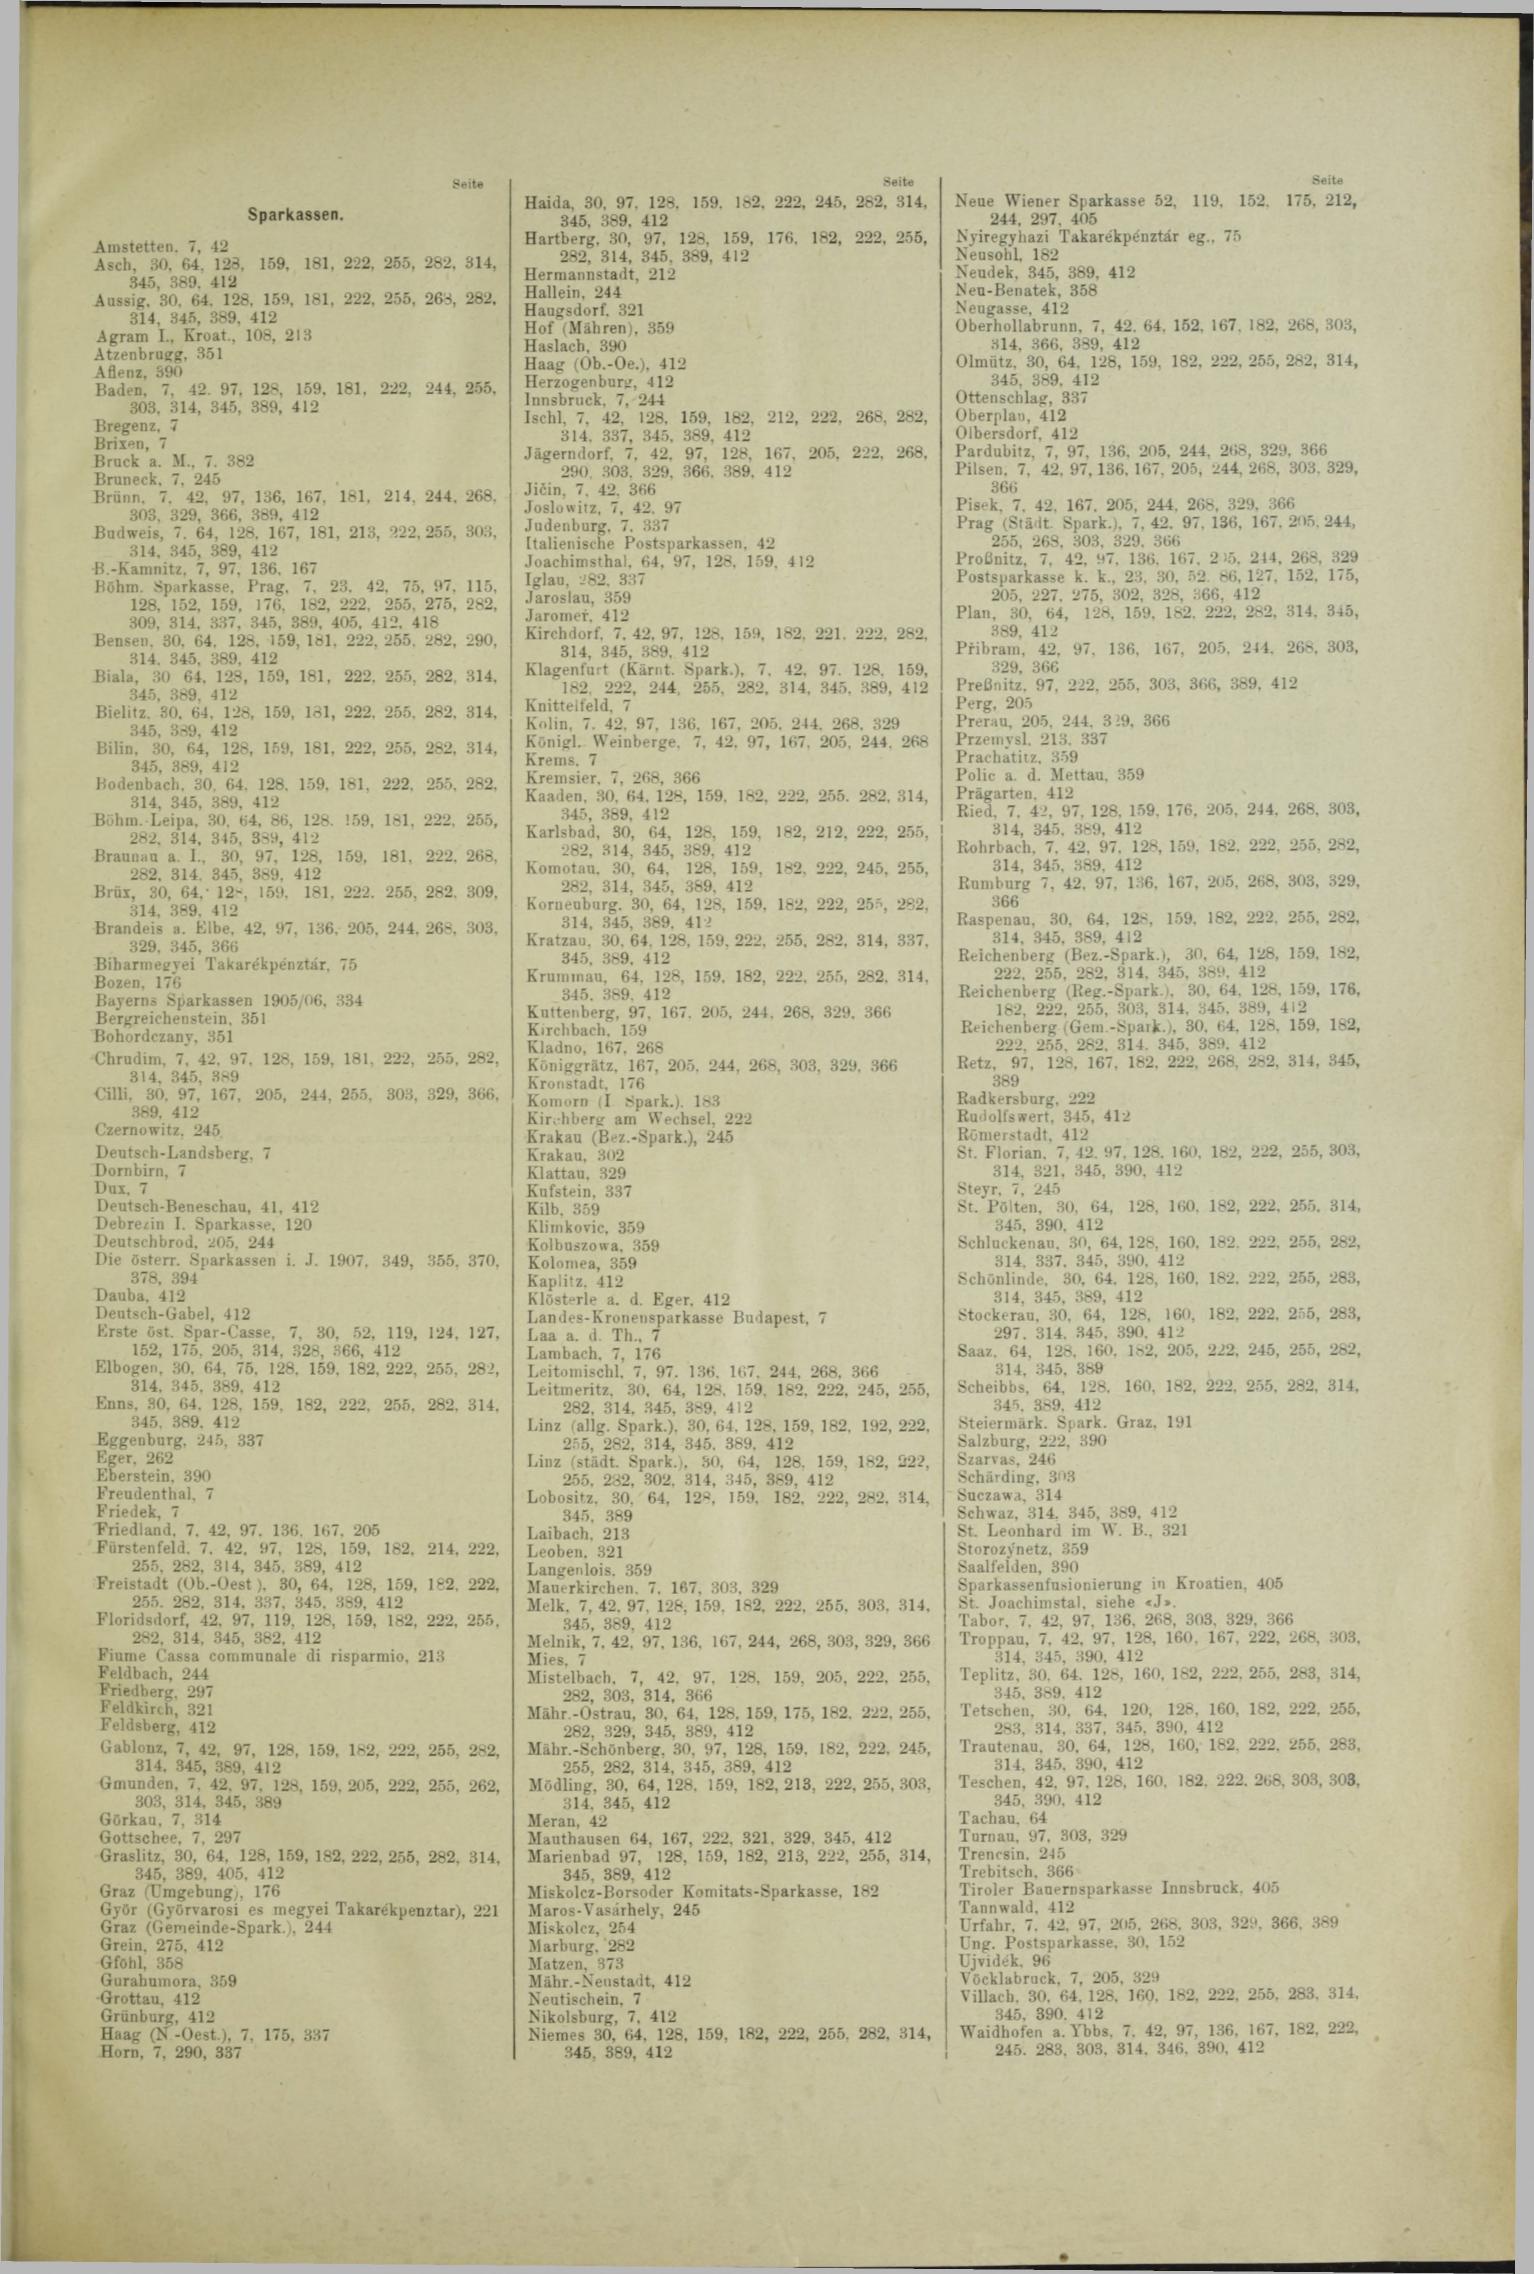 Der Tresor 07.11.1908 - Seite 9